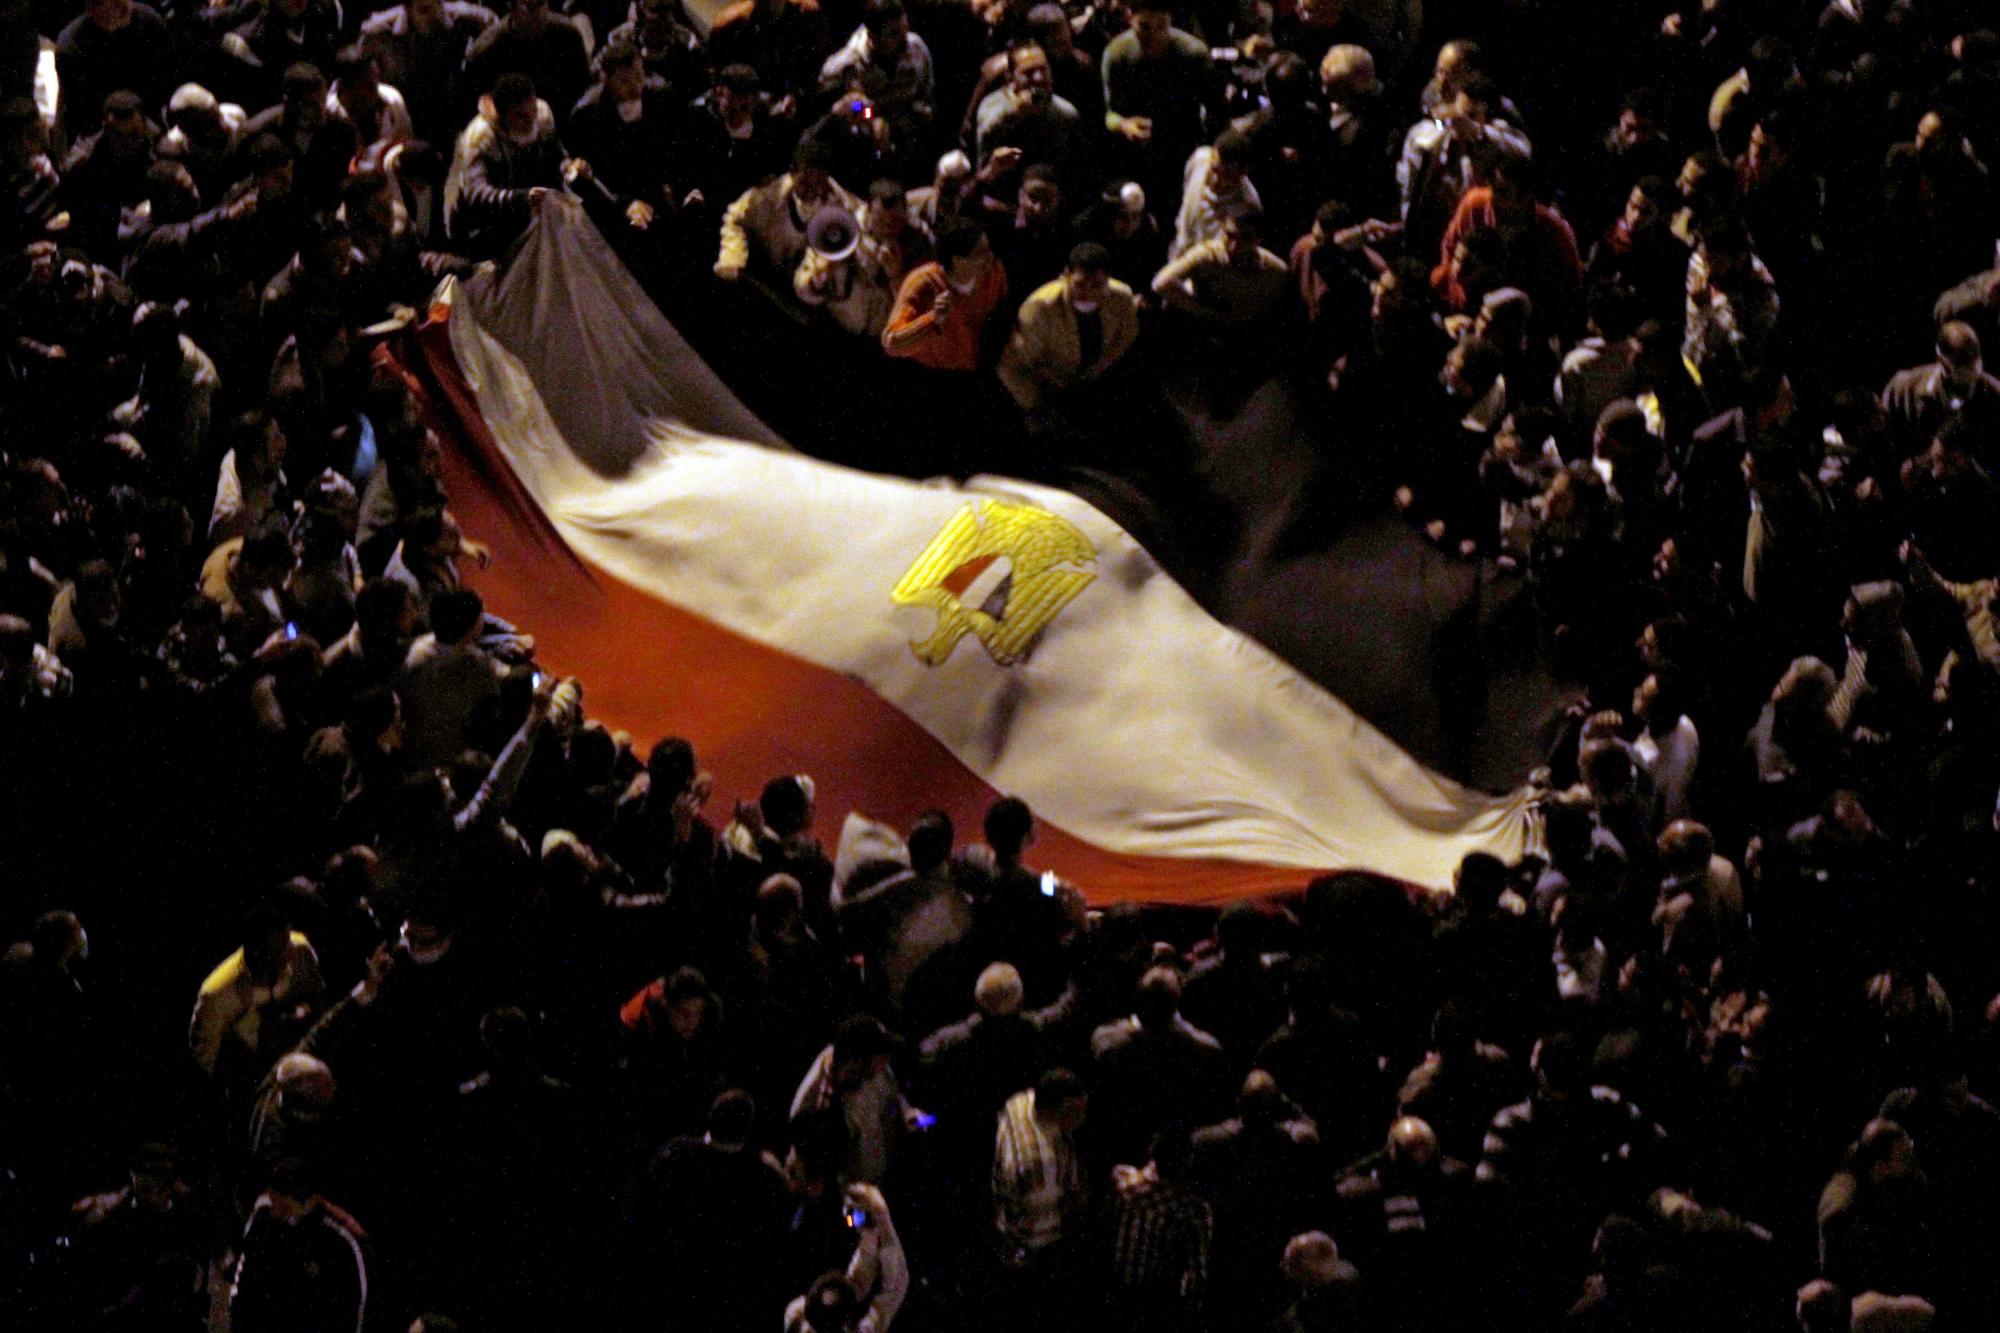 埃及骚乱致千余人死伤 多名总统候选人公开抵制大选